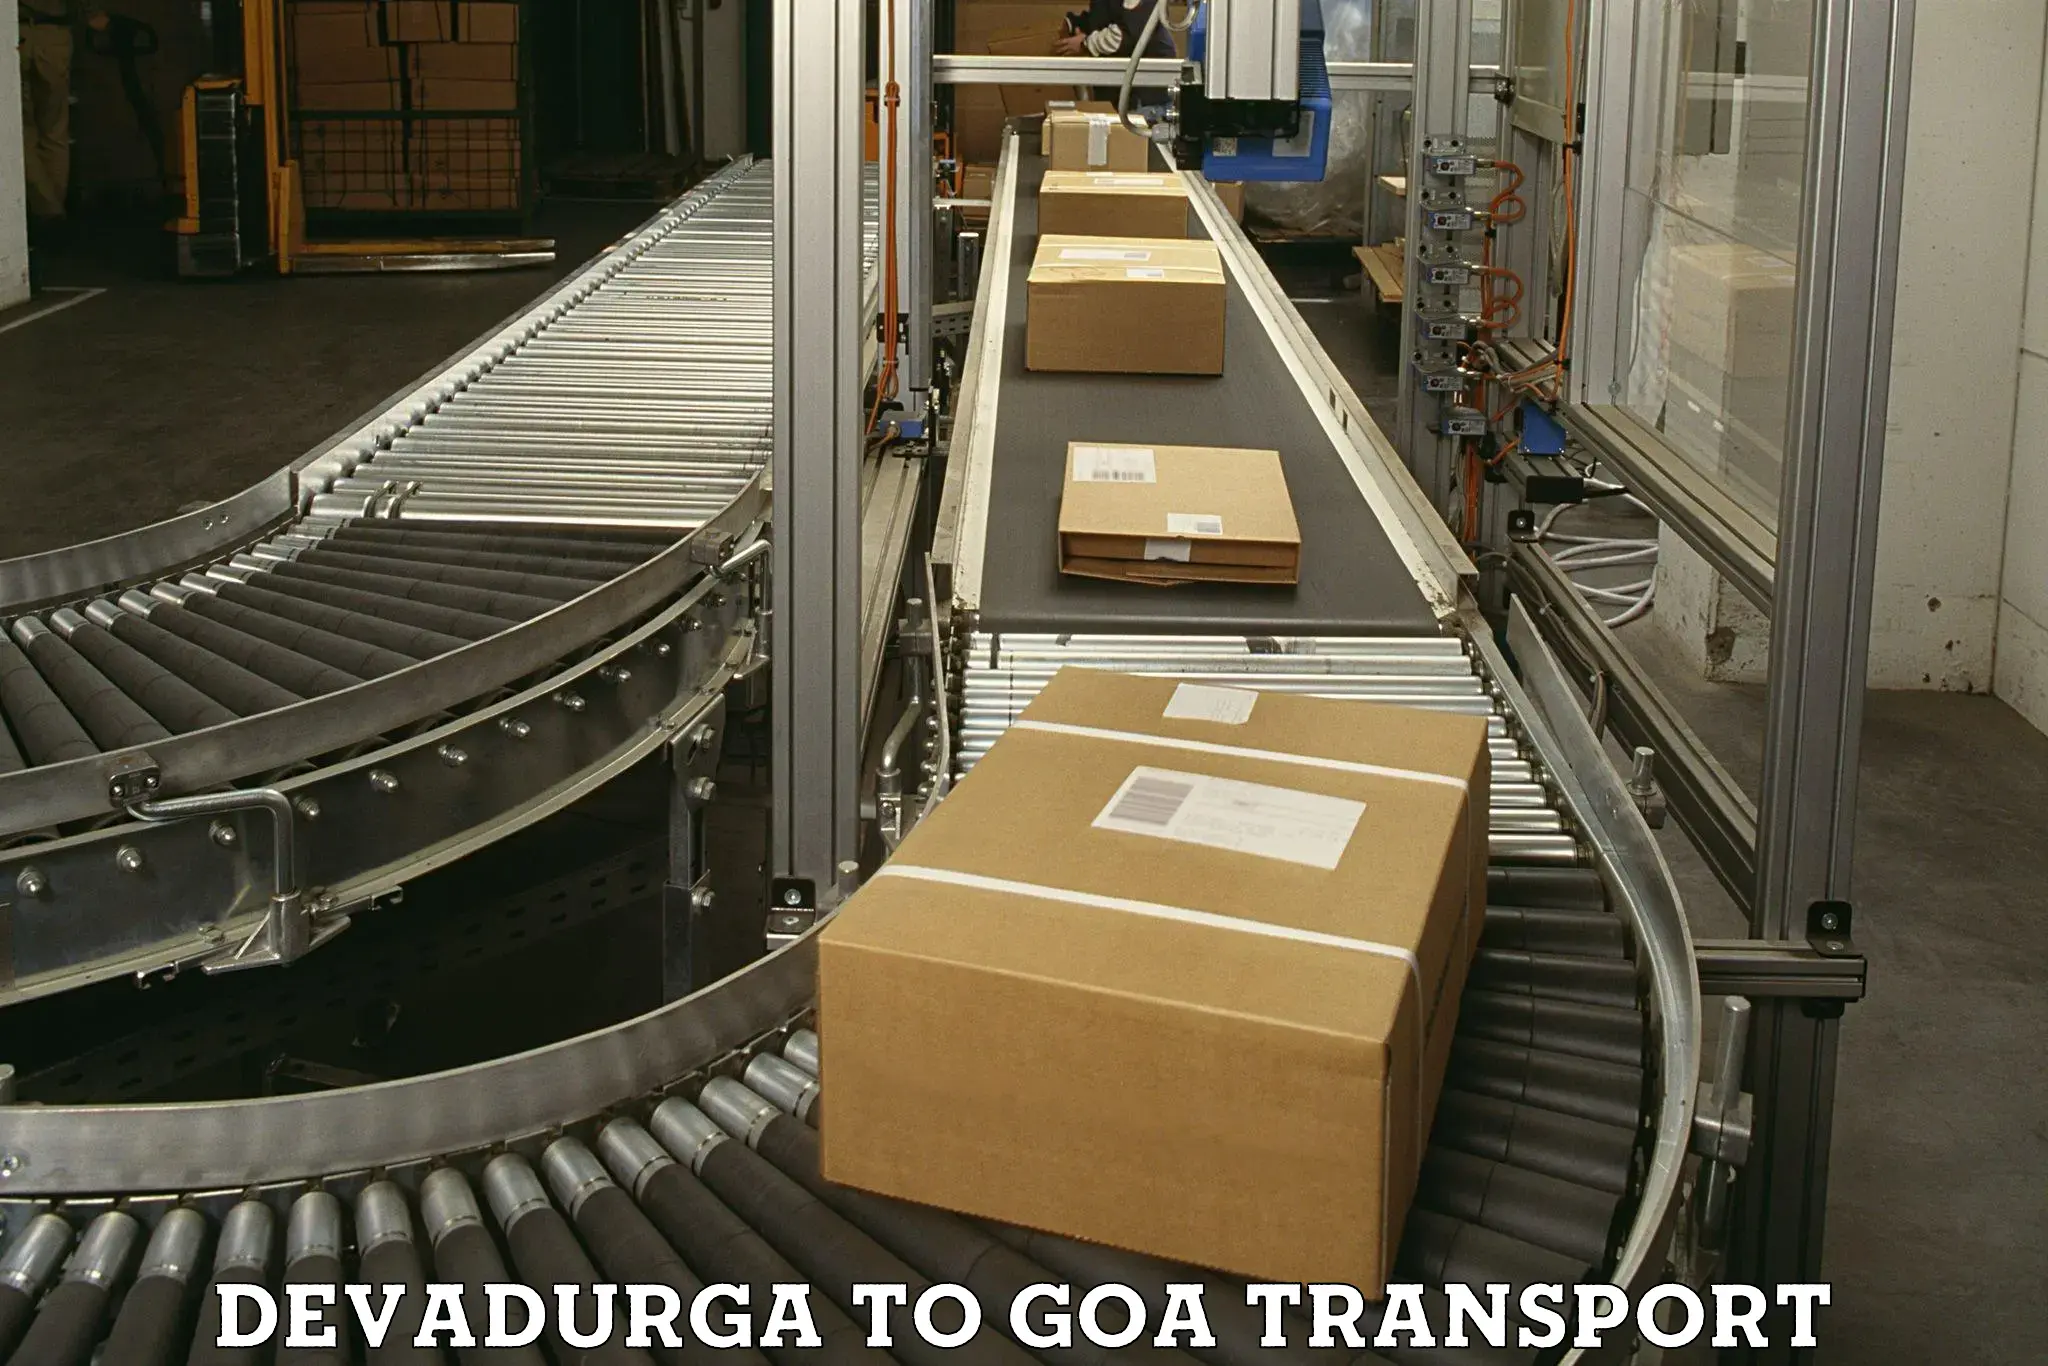 Air freight transport services in Devadurga to Bicholim